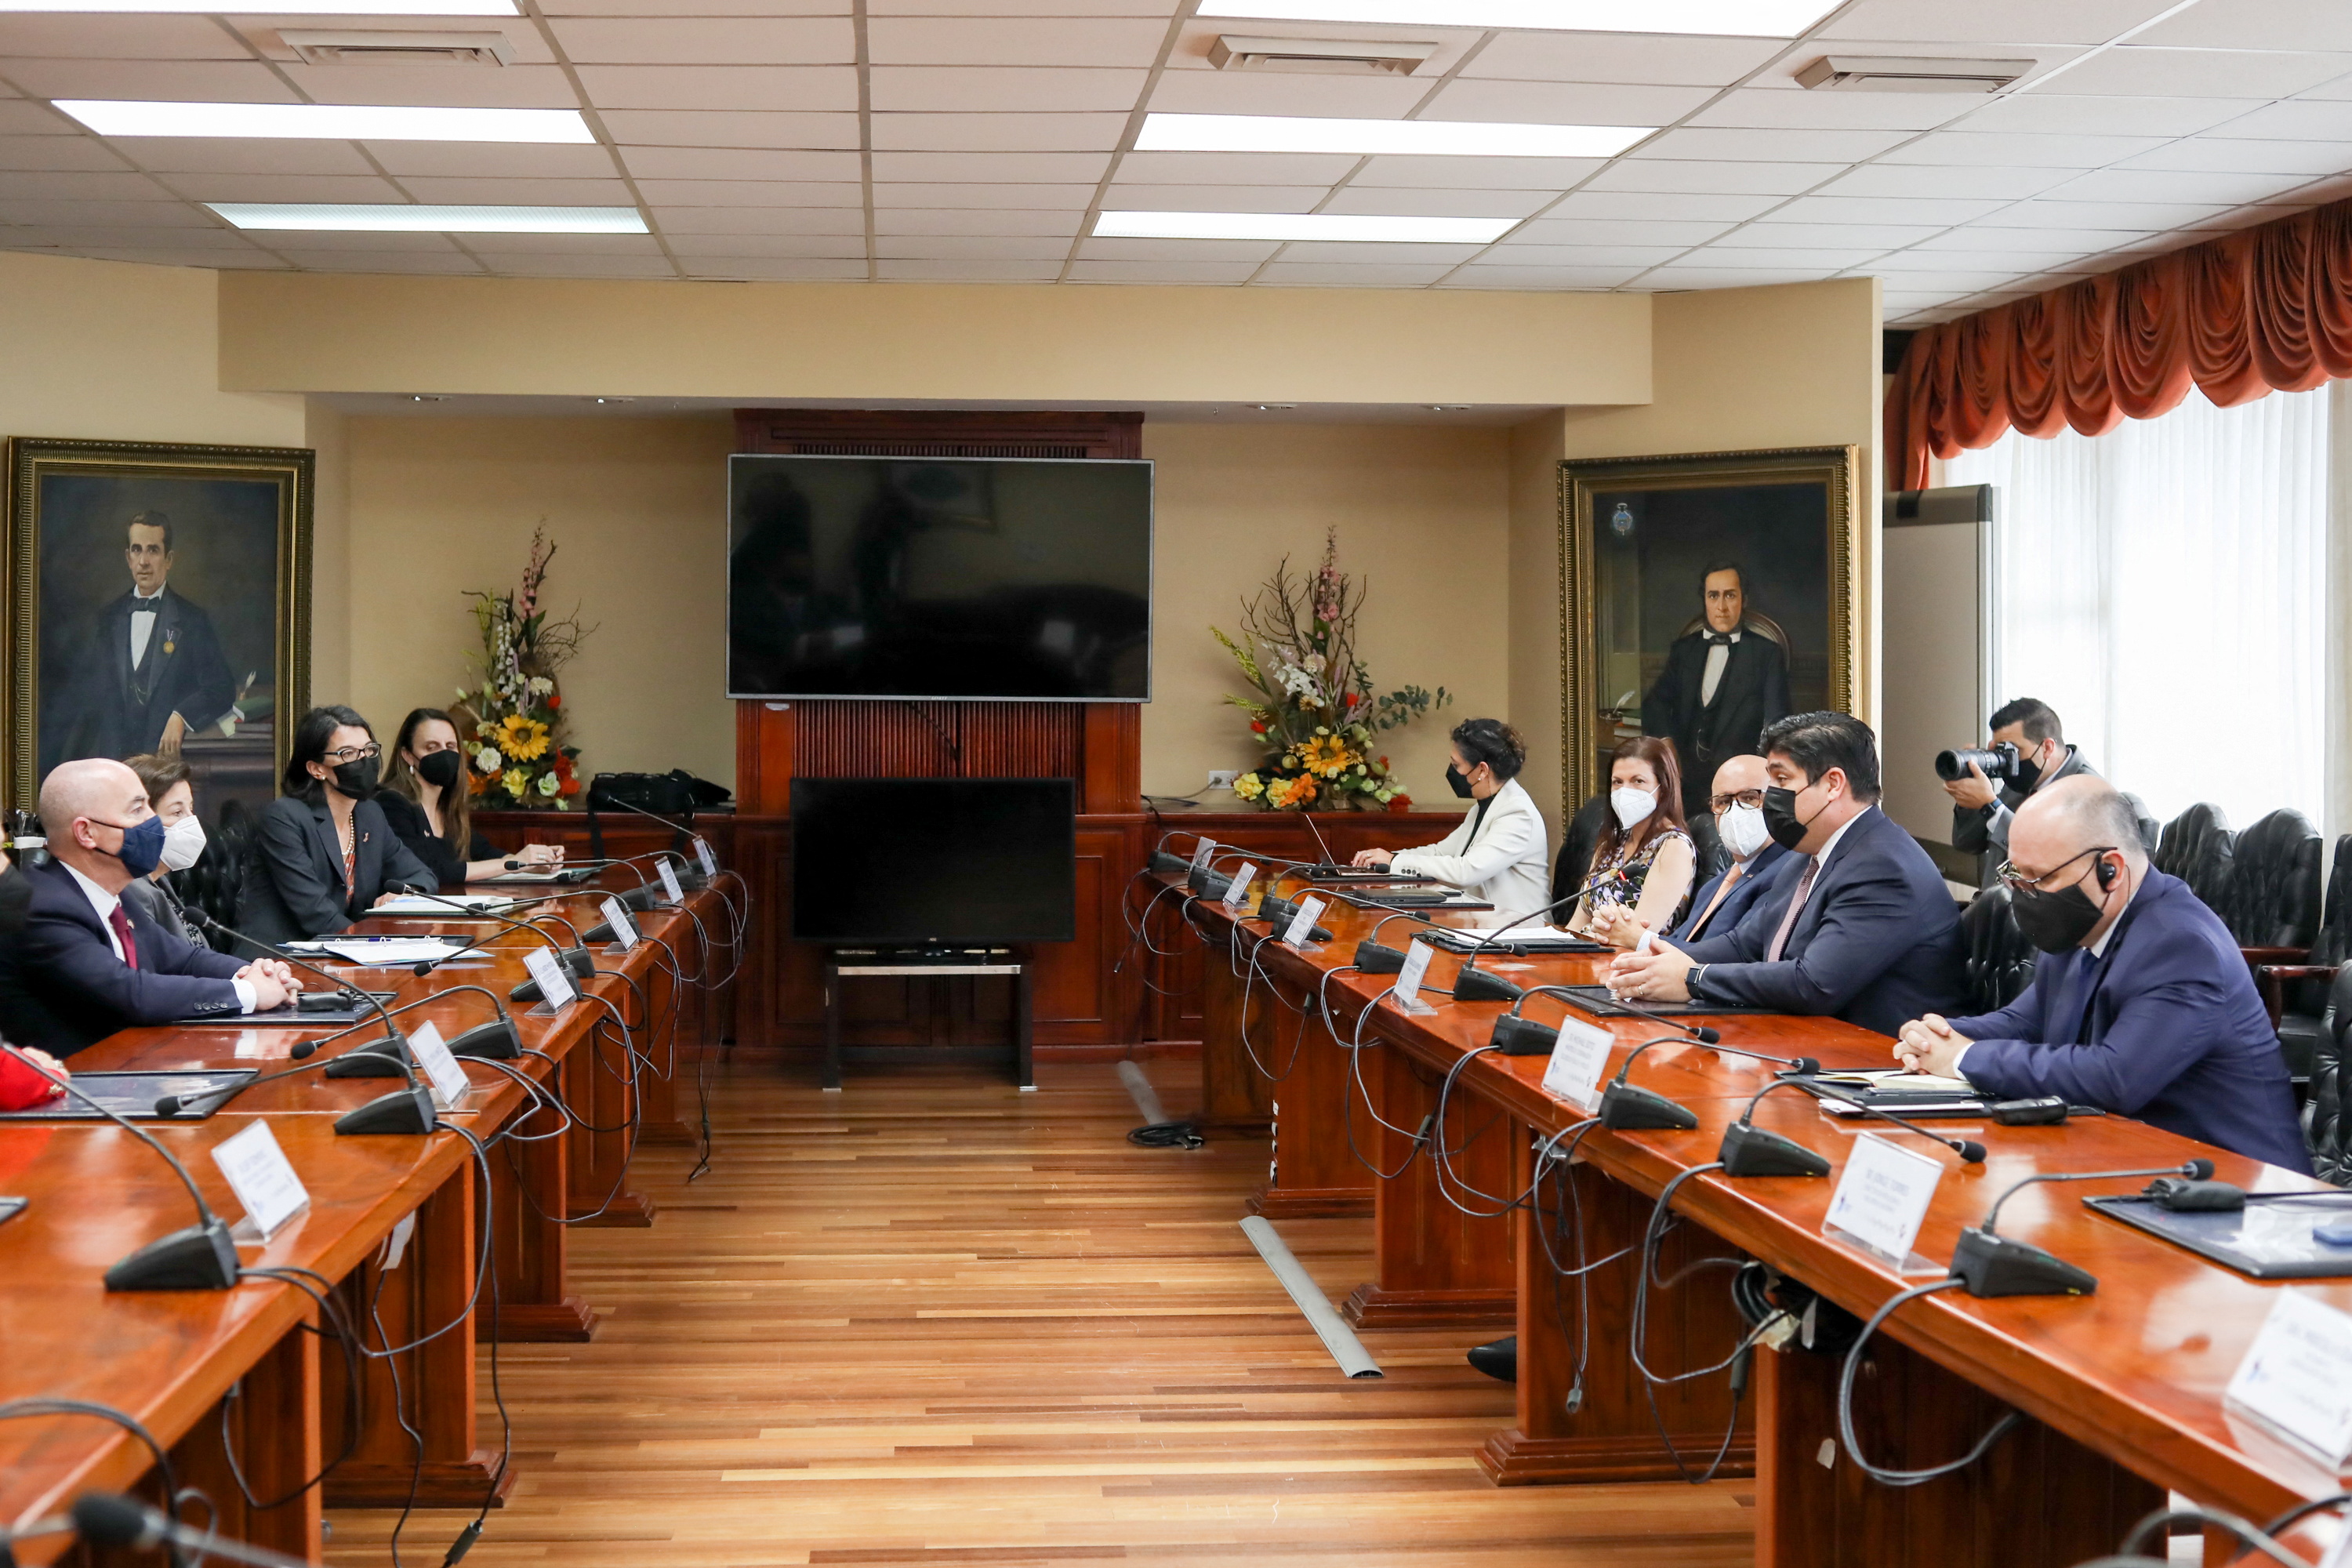 U.S. Homeland Security Secretary Alejandro Mayorkas meets Costa Rica's President Carlos Alvarado Quesada in San Jose